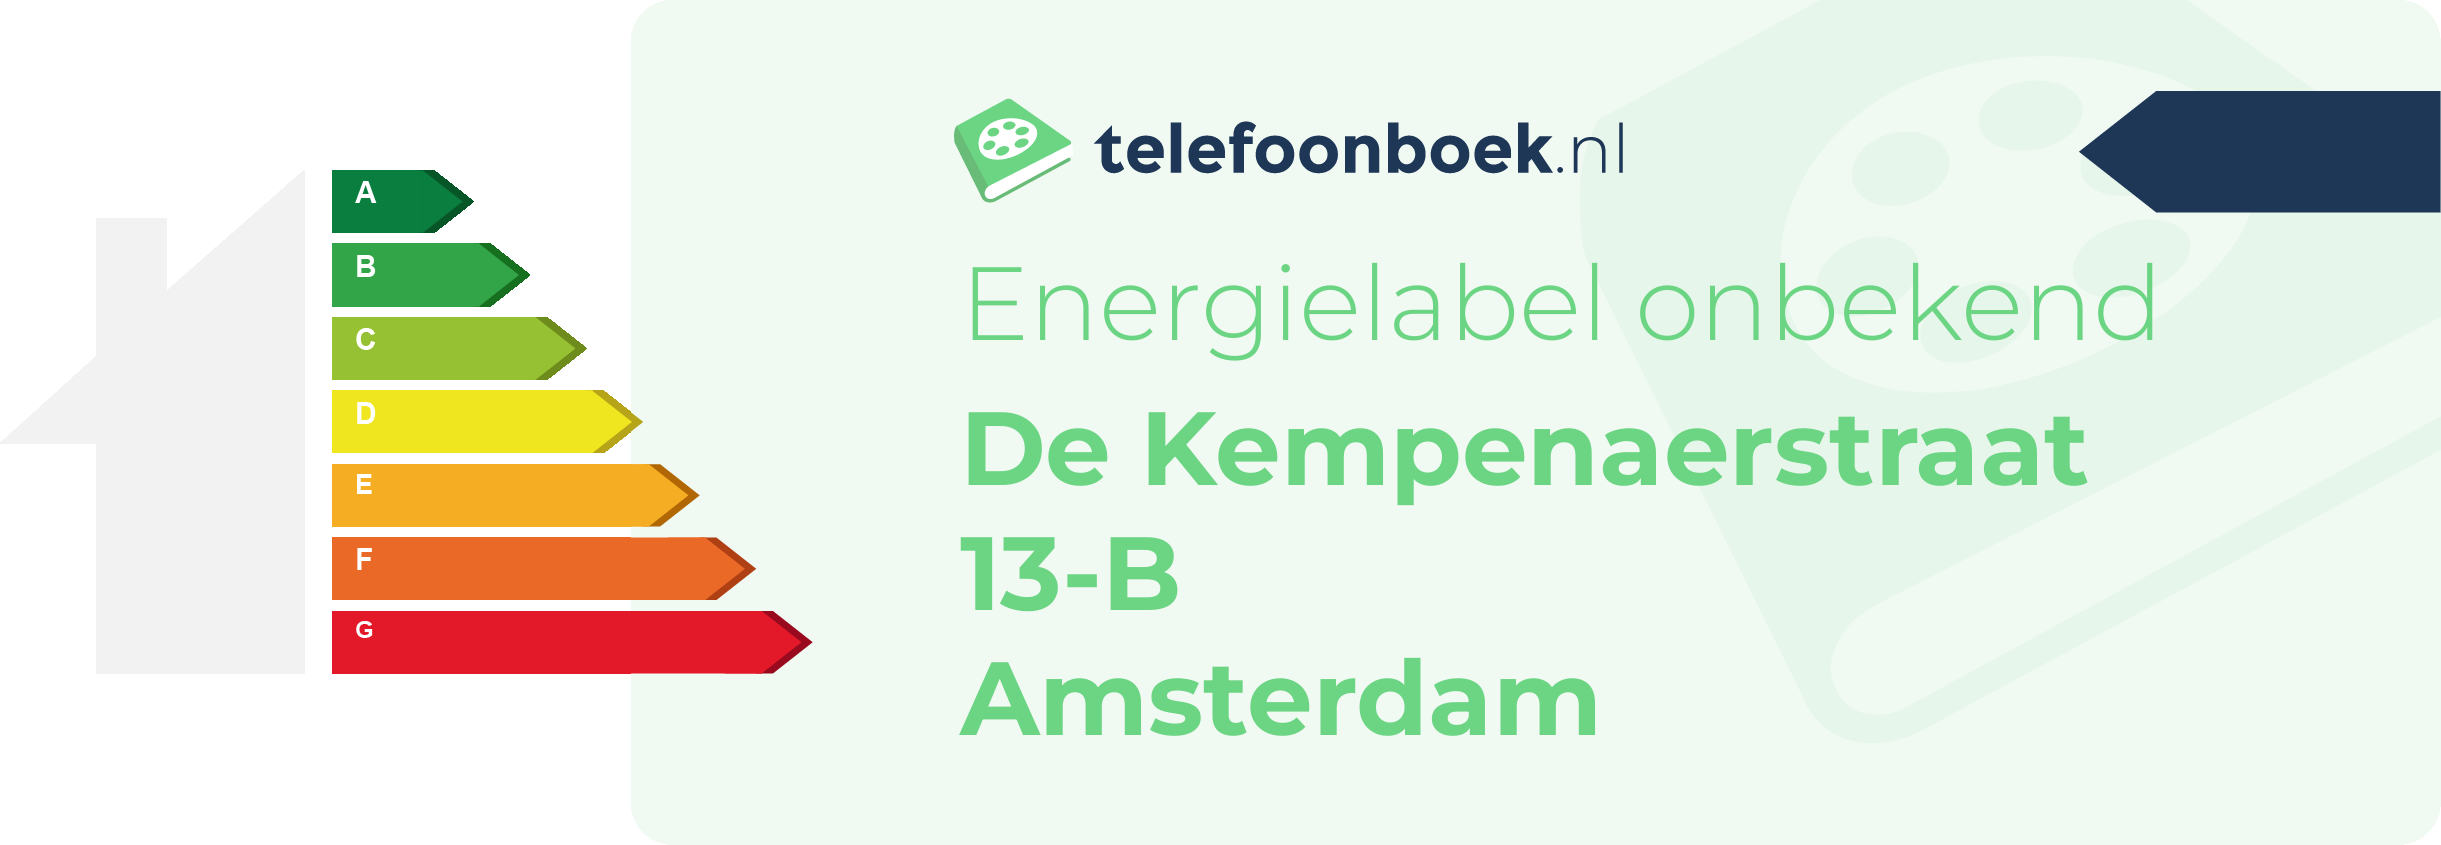 Energielabel De Kempenaerstraat 13-B Amsterdam